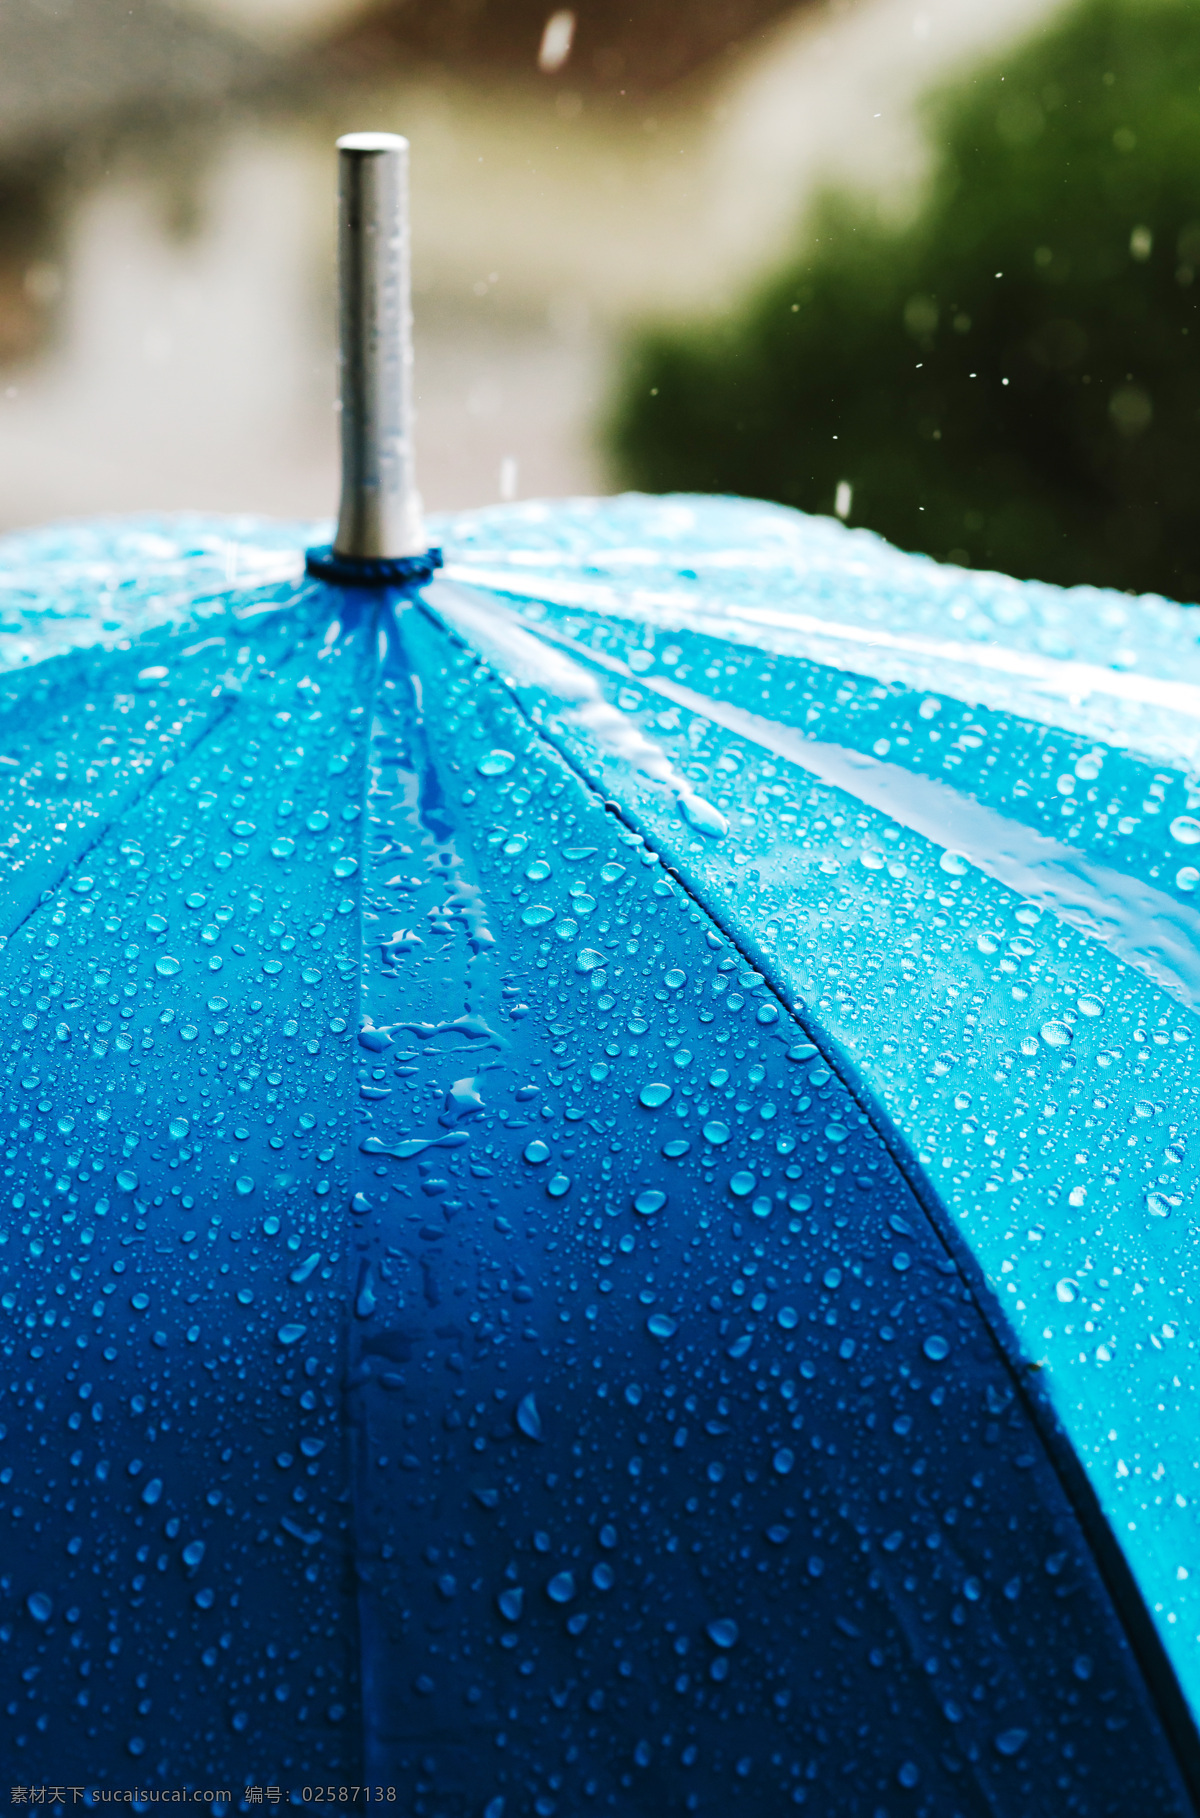 雨 中 蓝色 伞 蓝色伞 大伞 雨中 大雨 淋雨 下雨 雨天 天气 其他风光 风景图片